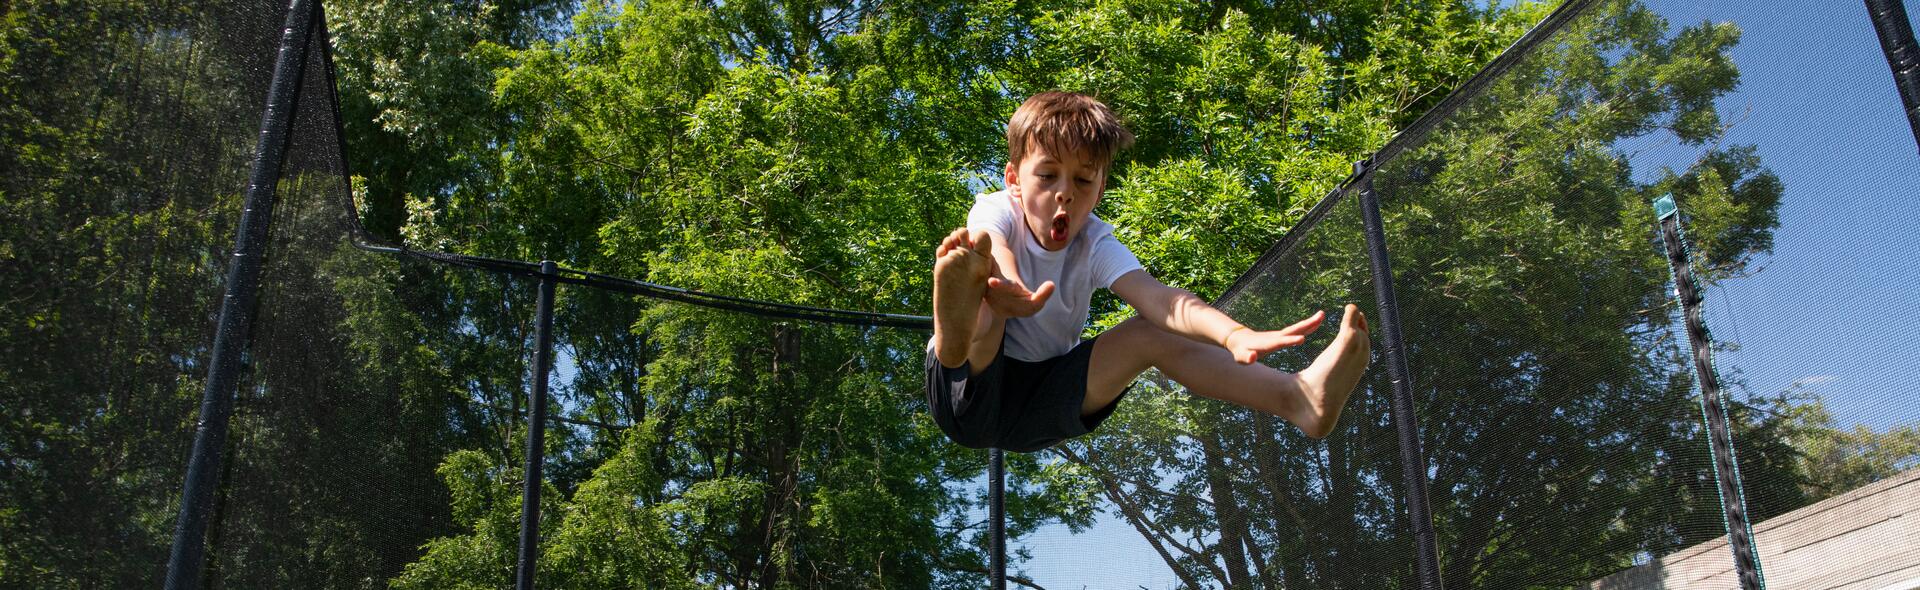 3 ideias de atividades para praticar trampolim em total segurança 